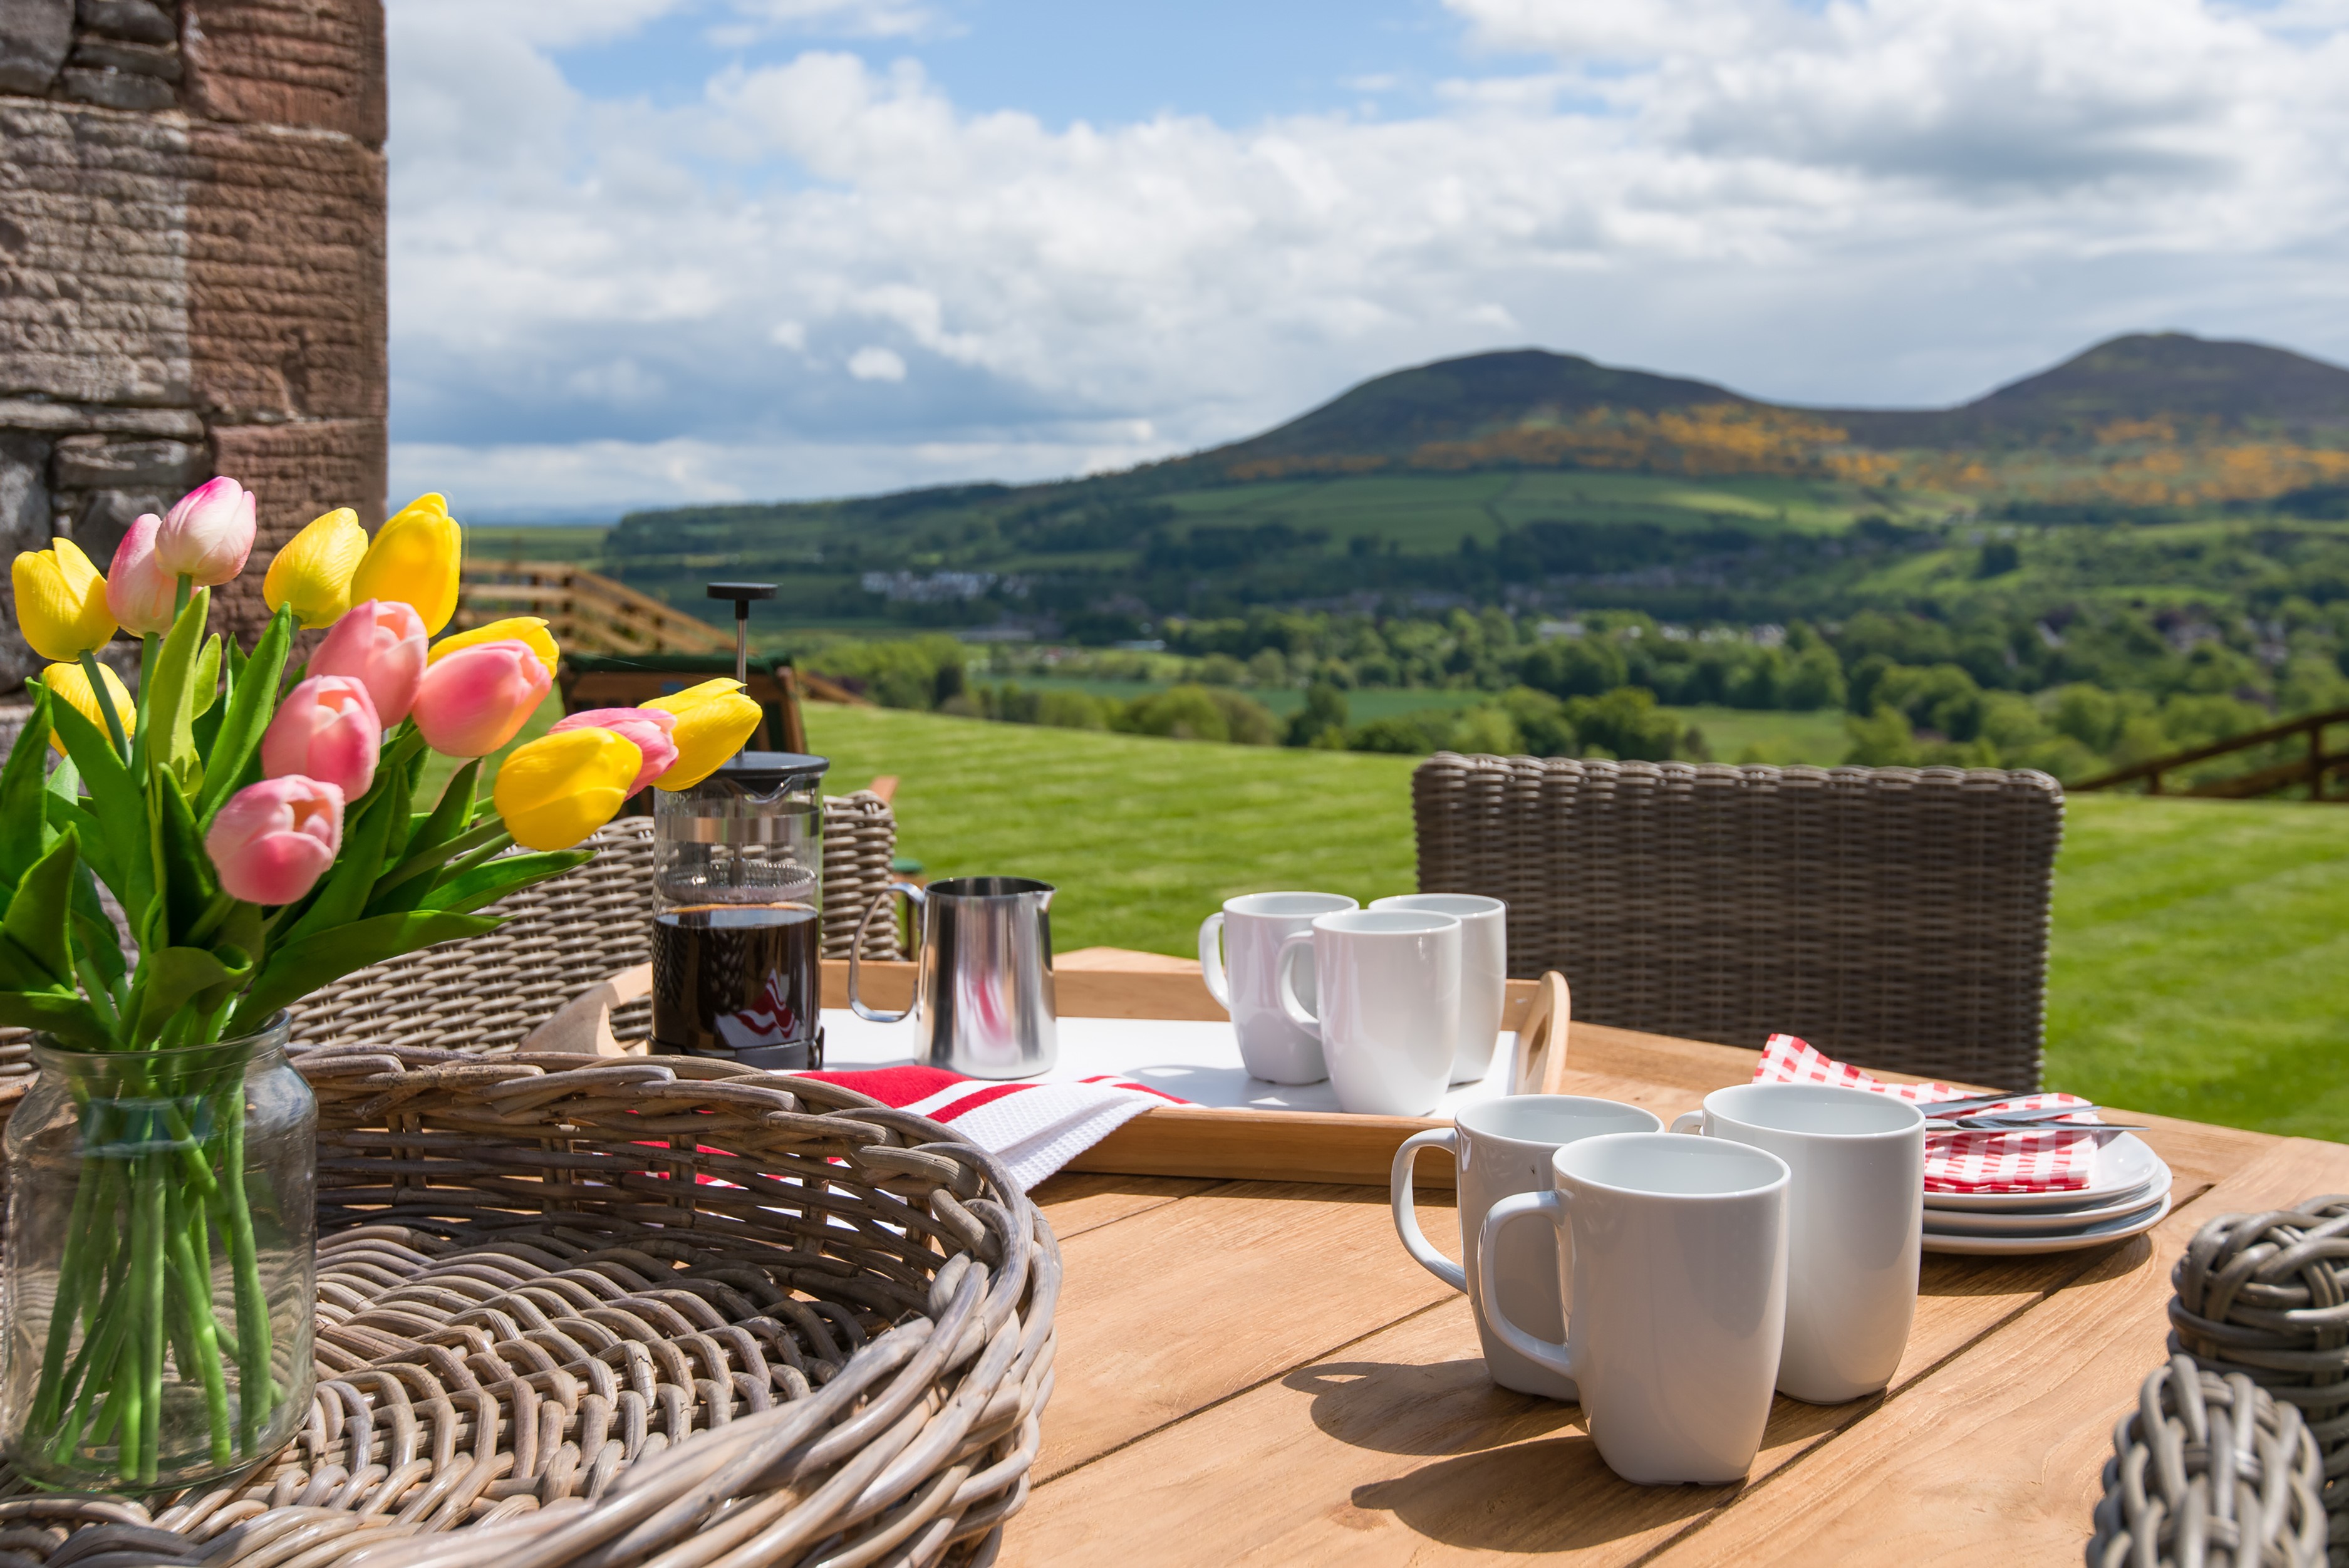 Granary - sunny outdoor seating area overlooking the Eildon hills